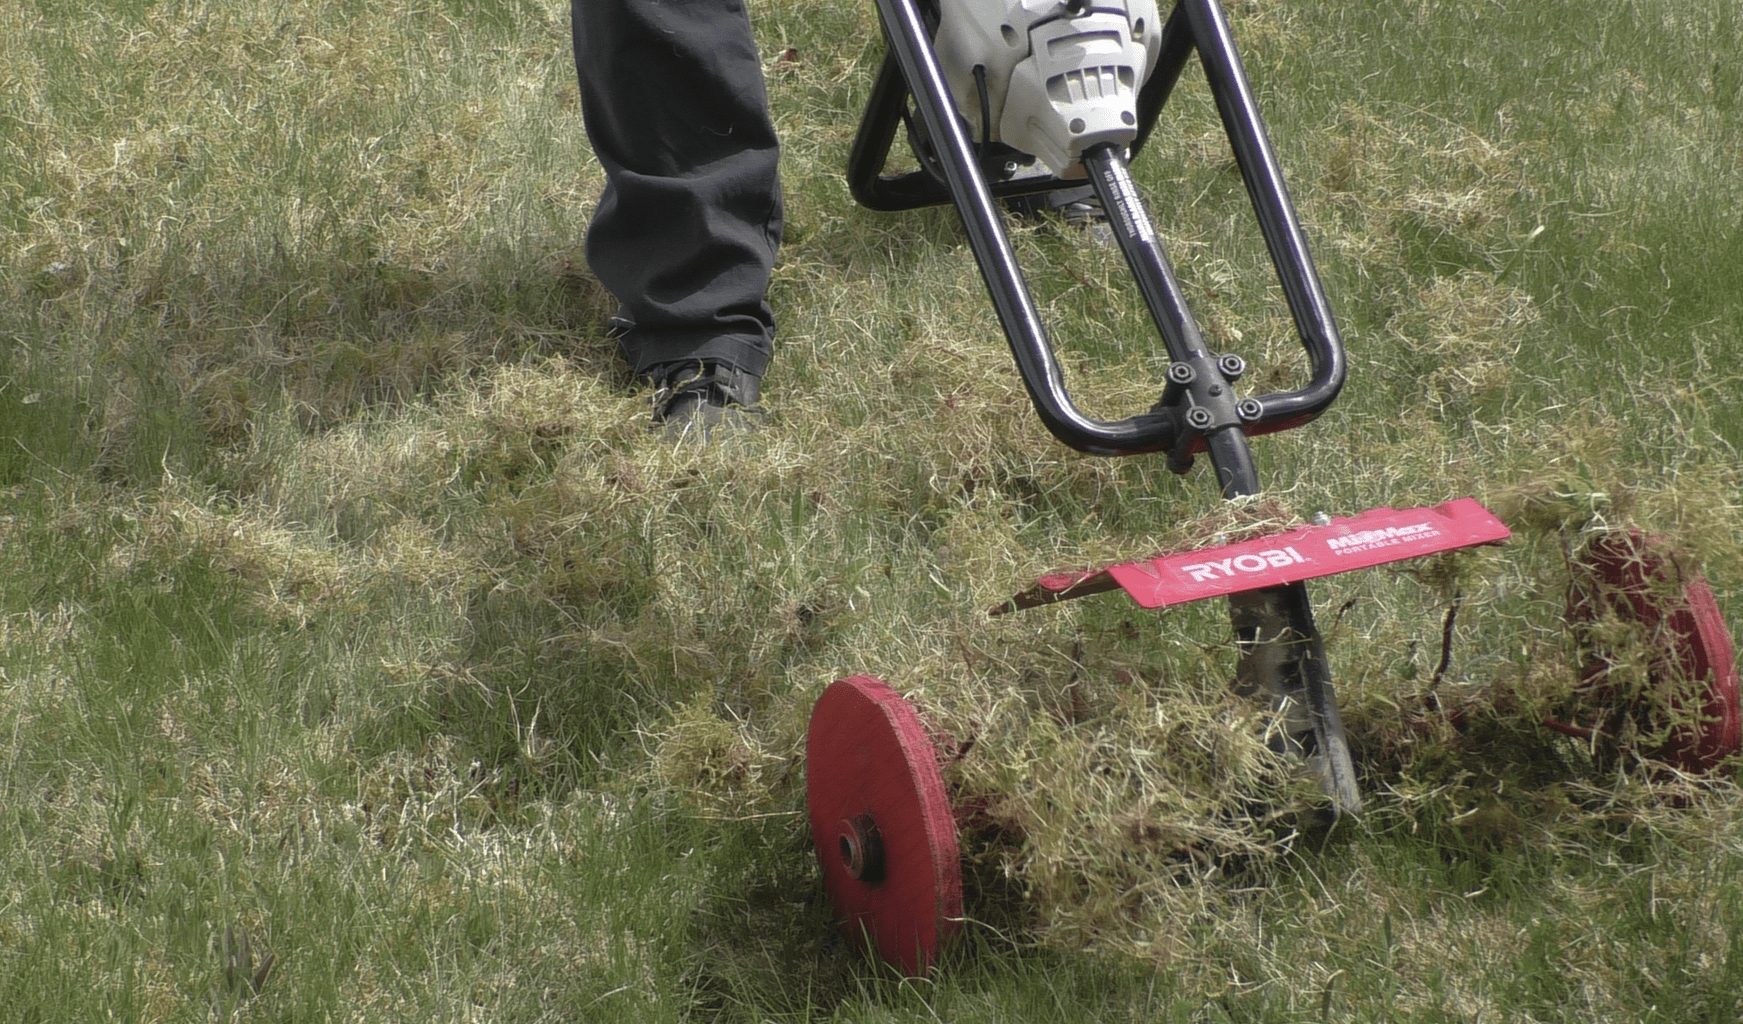 Homemade lawn dethatcher